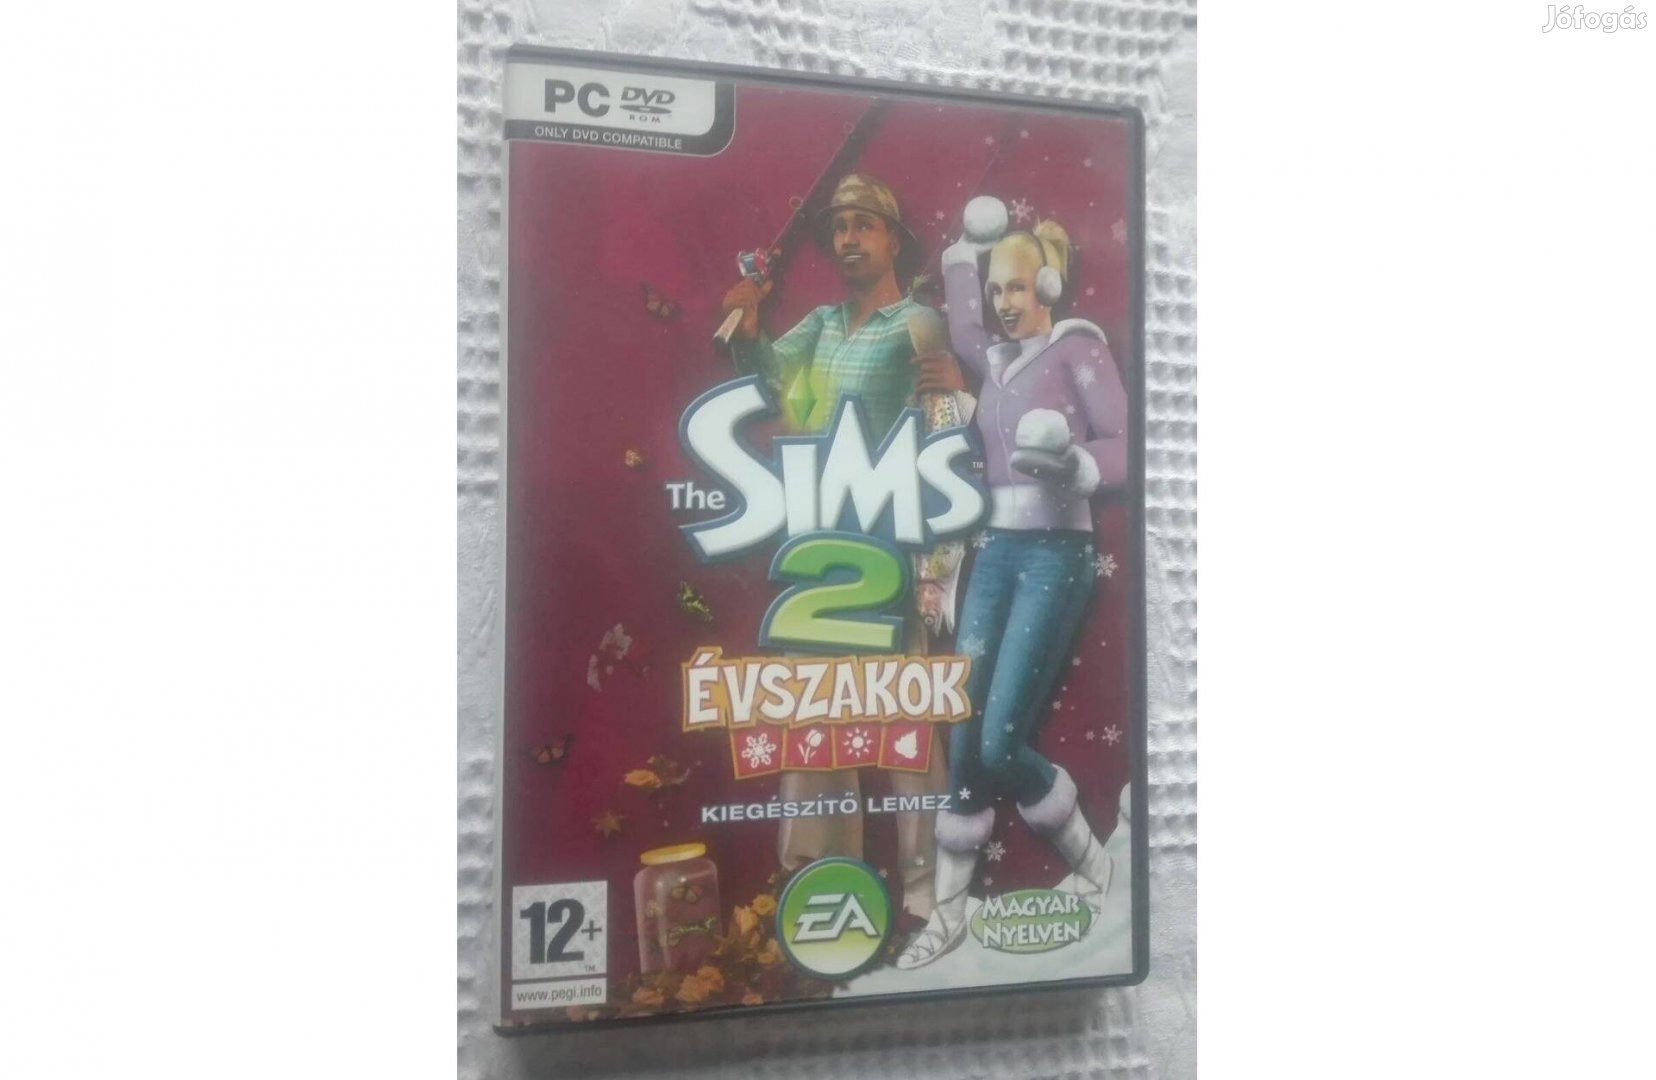 Sims2, Évszakok kiegészítő lemez